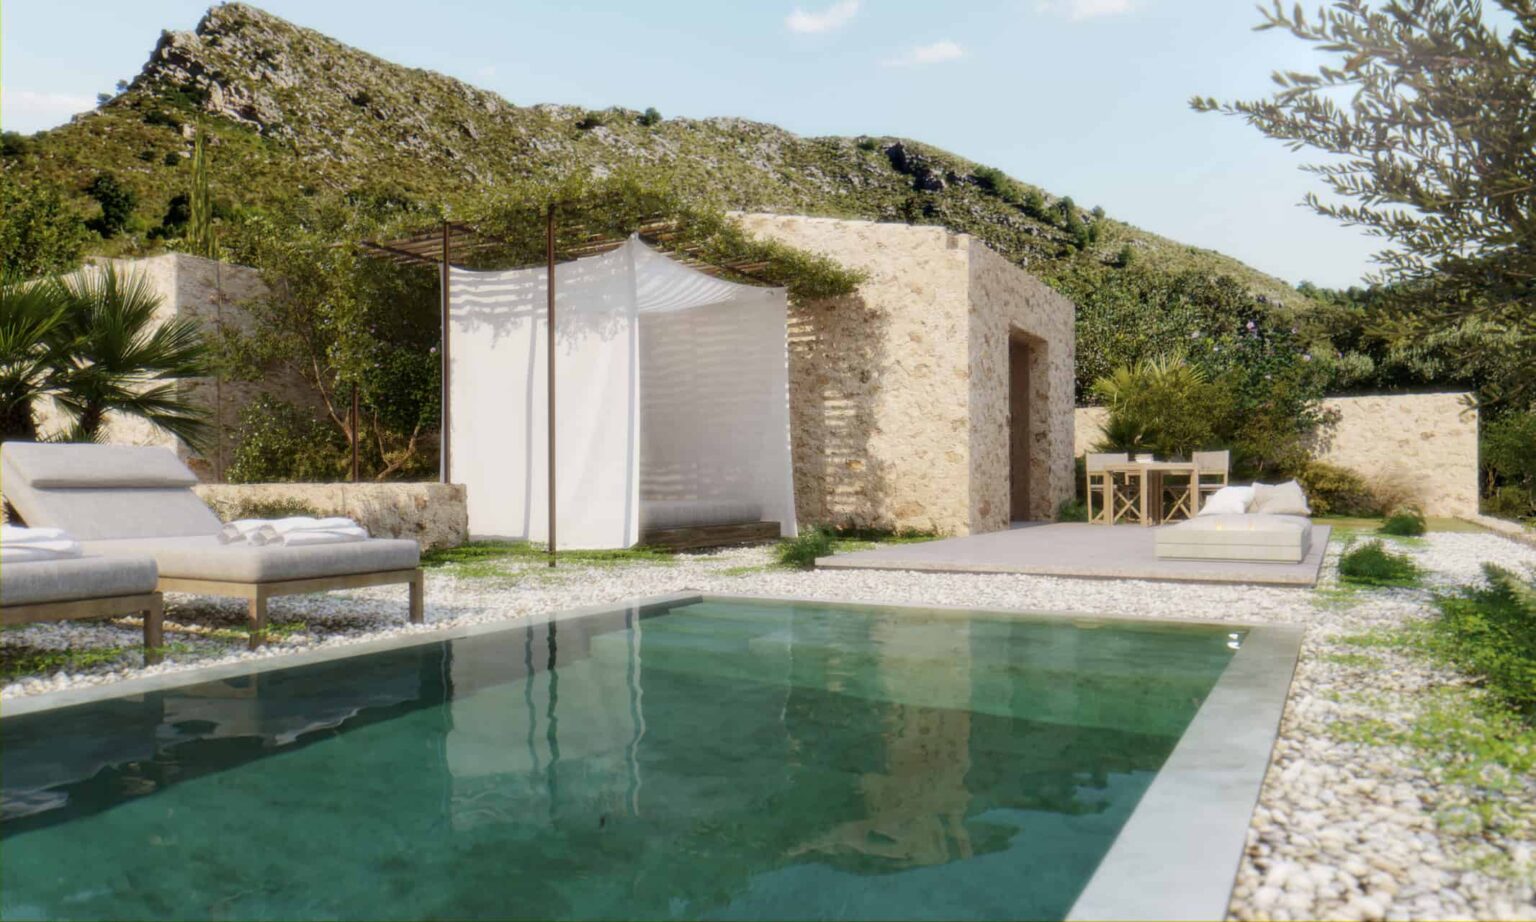 Es Racó d’Artà private terrace with pool